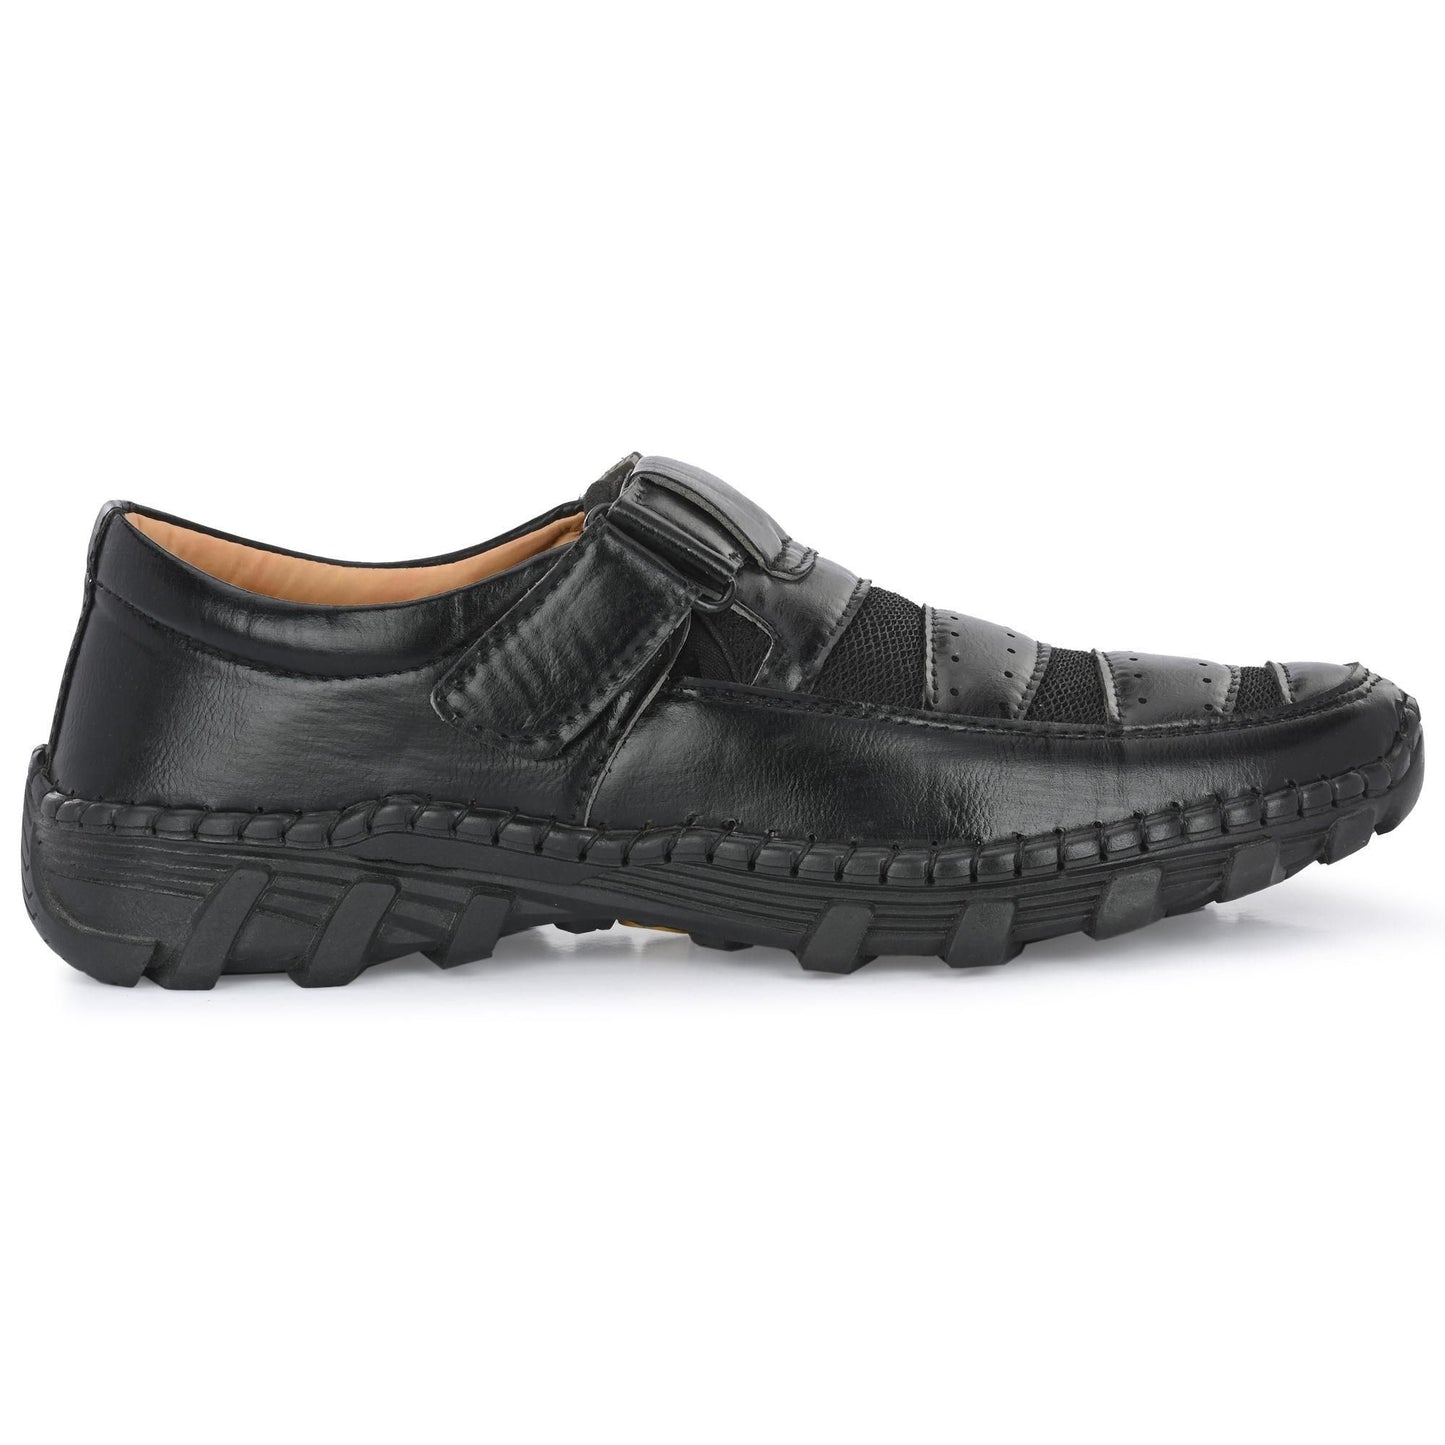 Men's Casual Roman Style Sandals Black